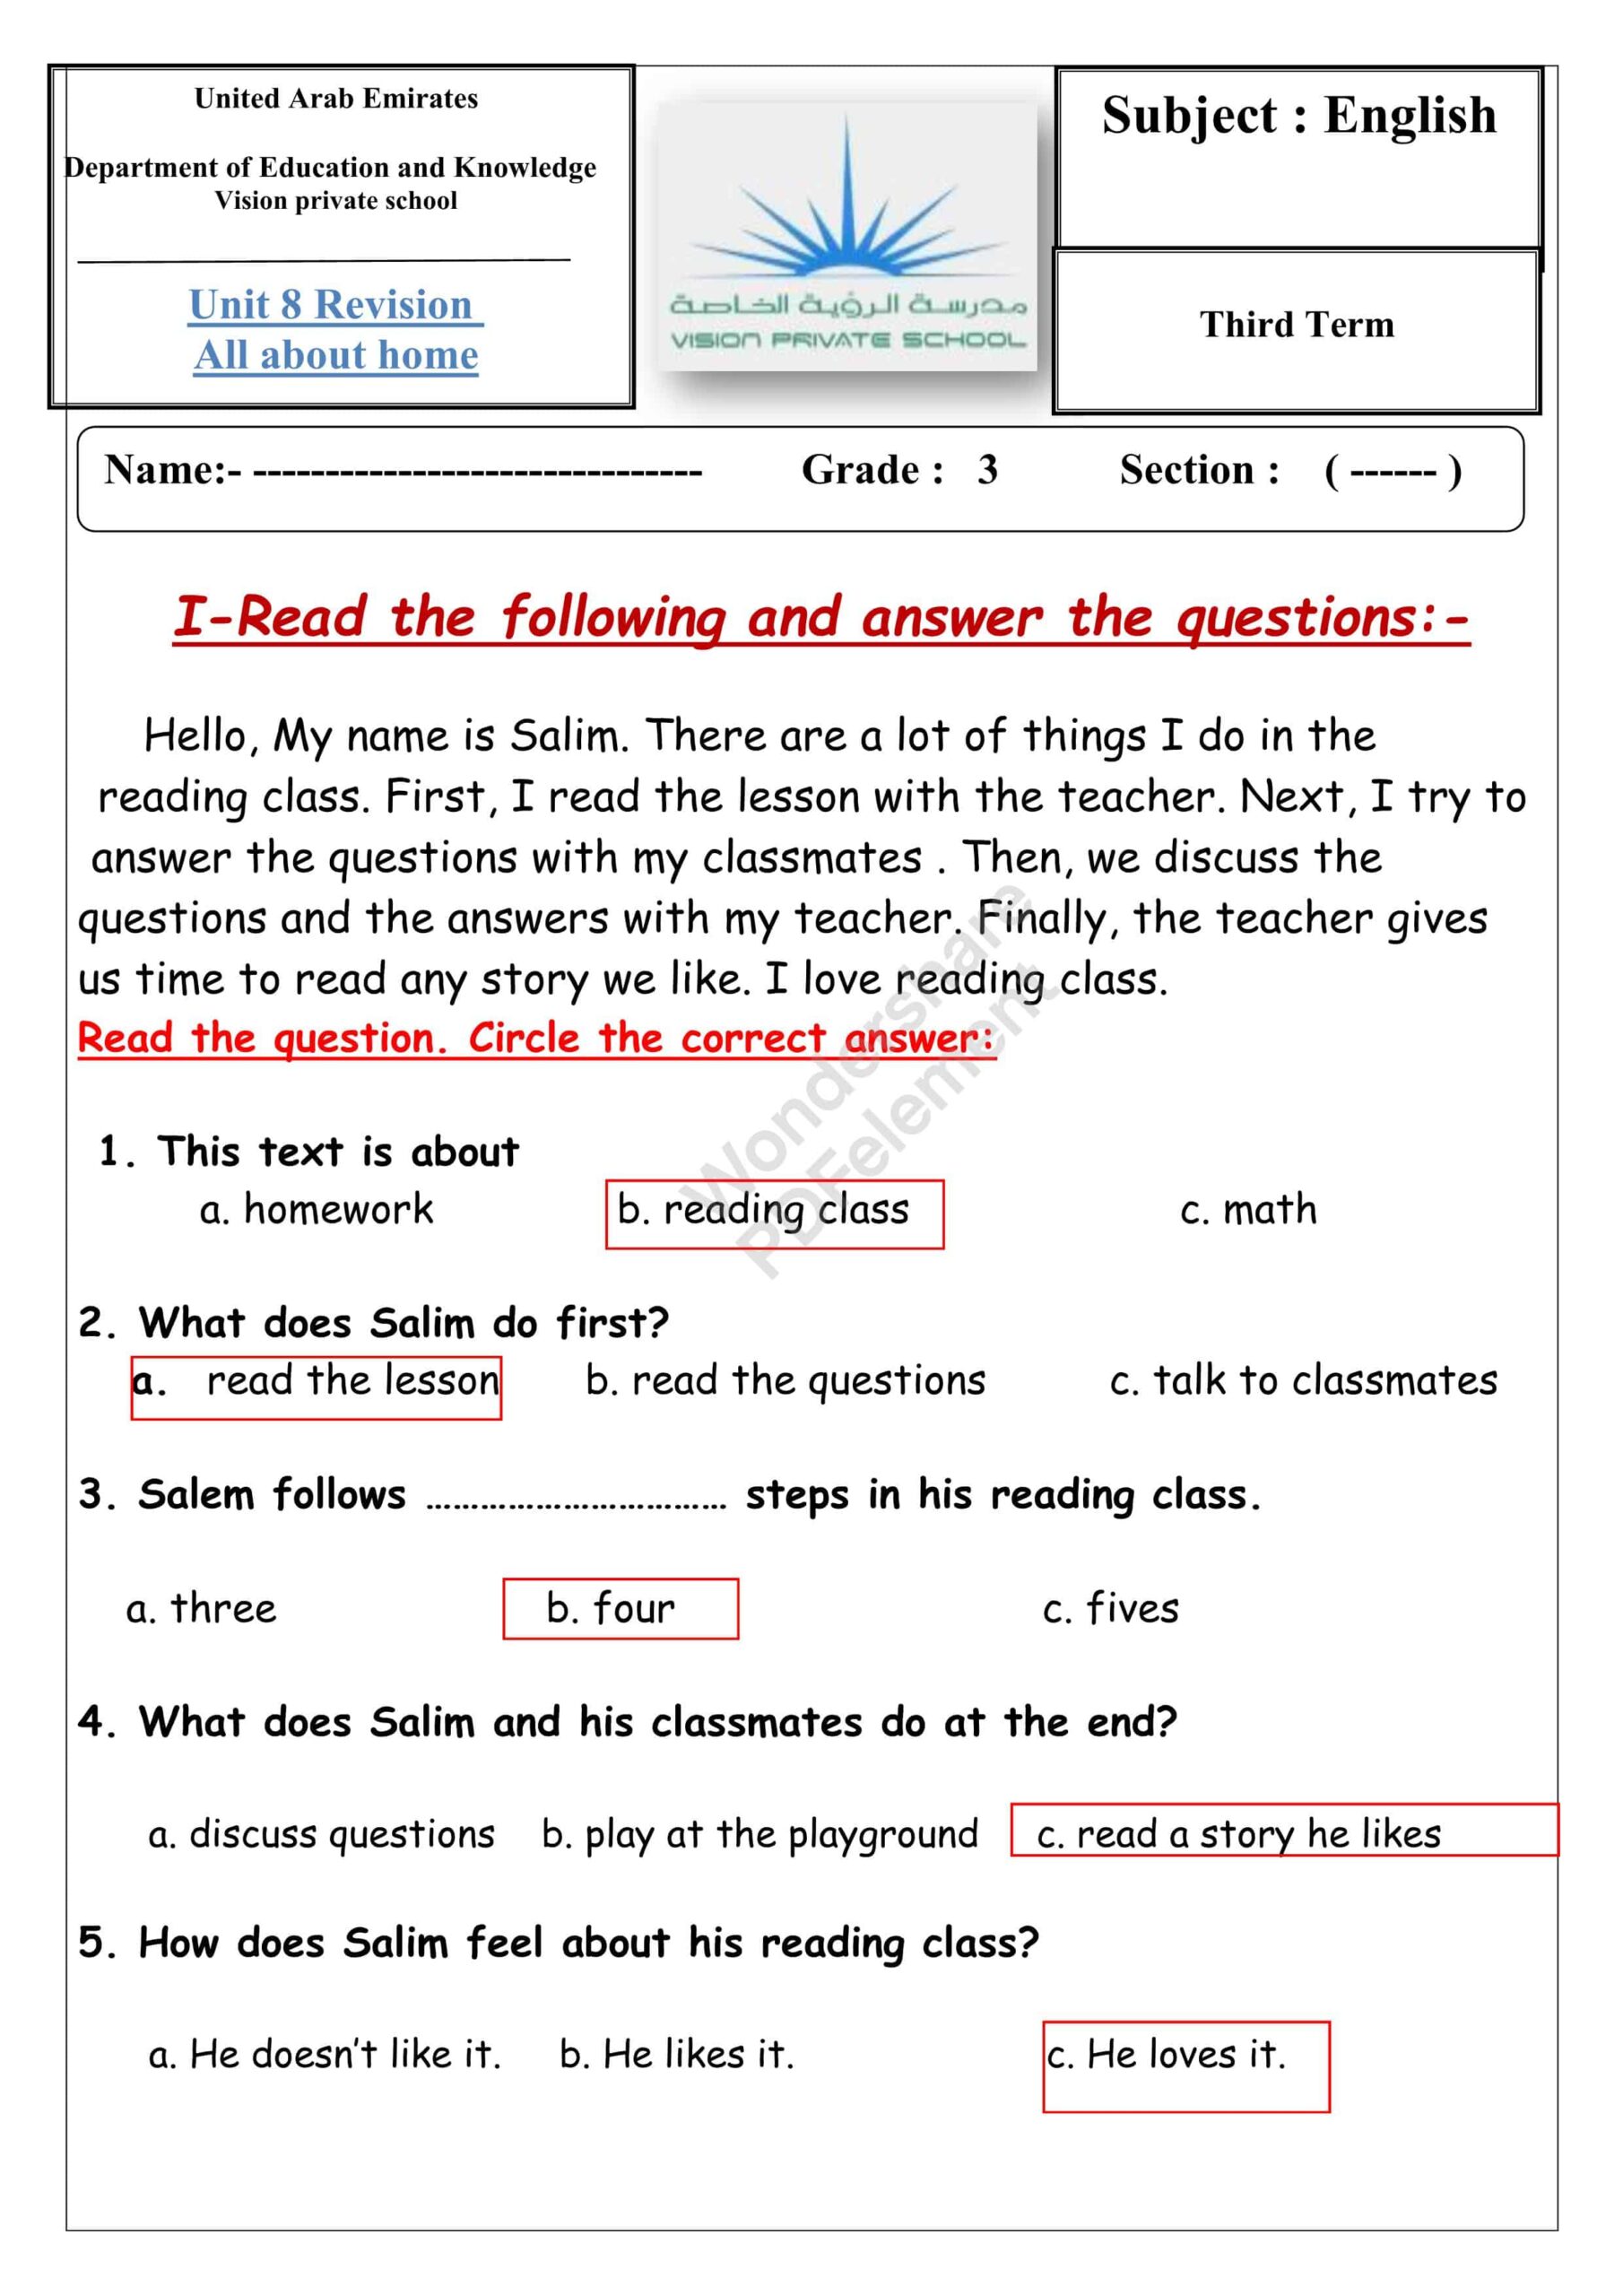 حل أوراق عمل Revision Unit 8 All about home اللغة الإنجليزية الصف الثالث